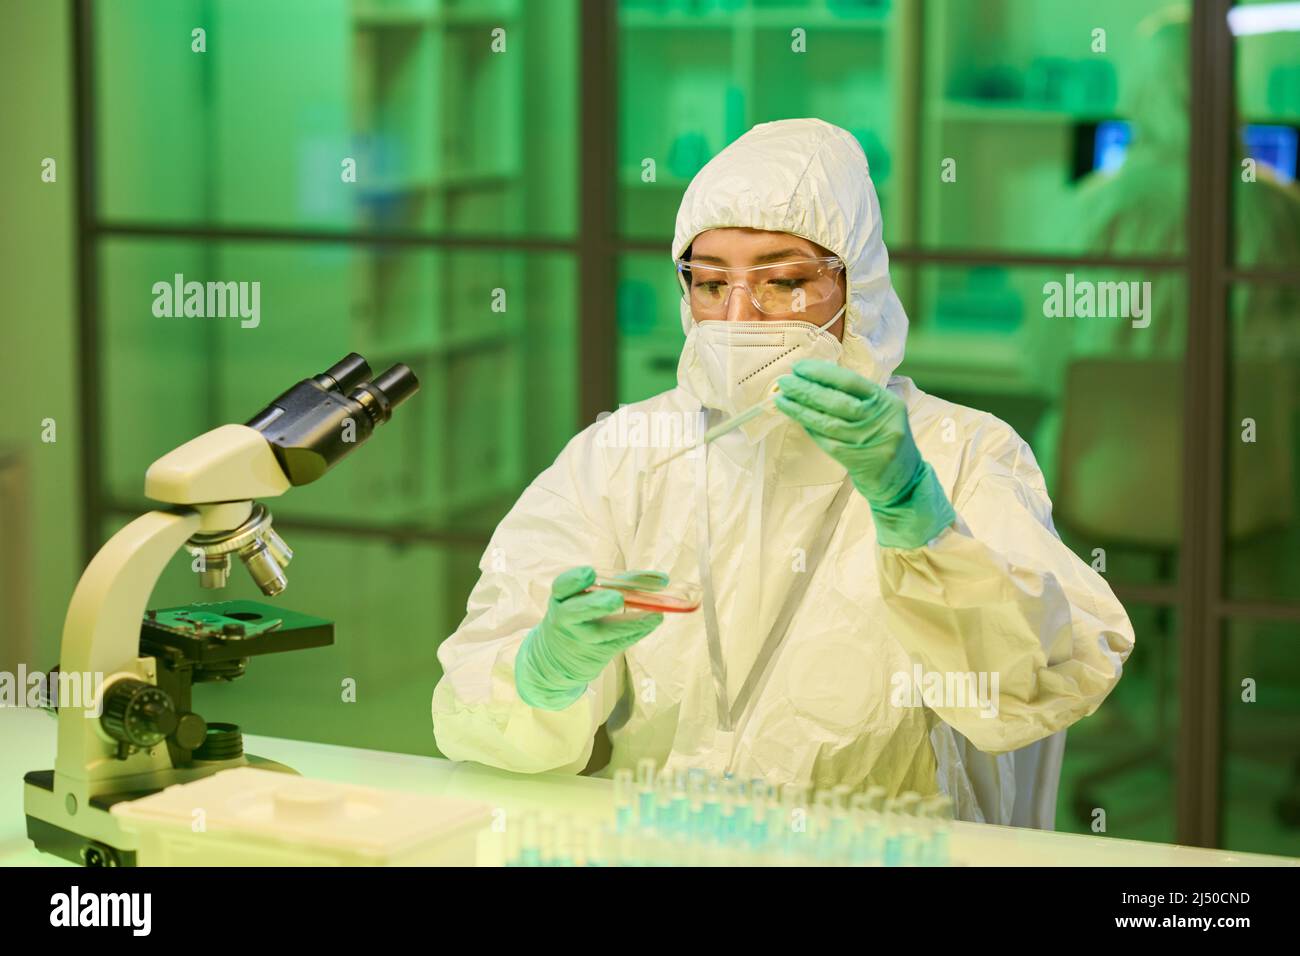 Moderne junge Laborarbeiterin oder Klinikerin, die während der wissenschaftlichen Expriment-Arbeit Flüssigkeit in Petrischale mit rosa chemischen Substanzen tropft Stockfoto